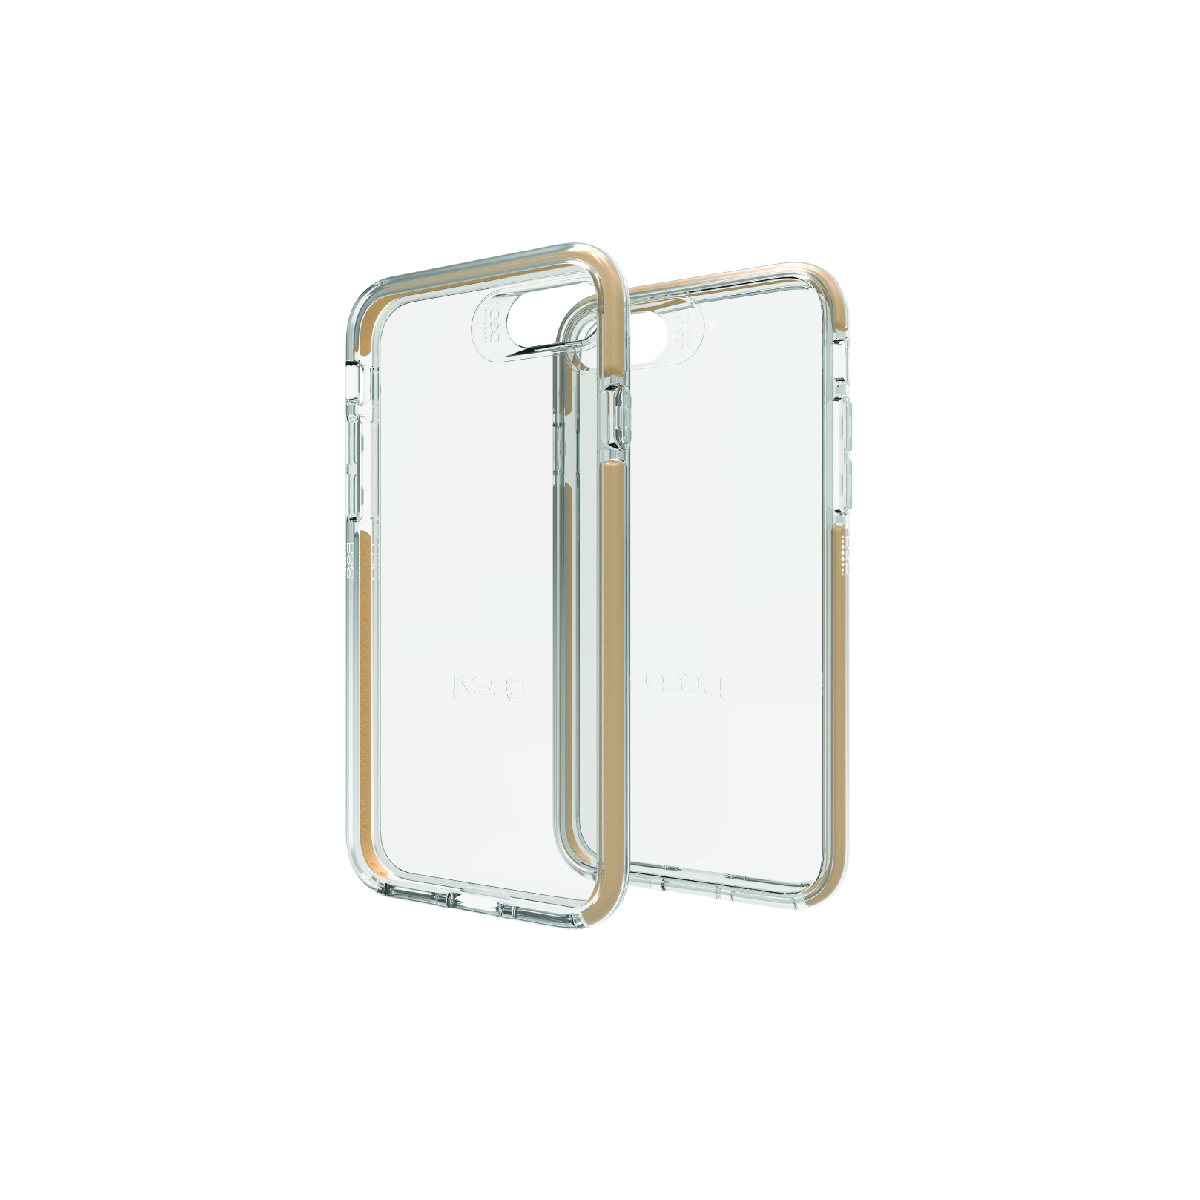 Ốp lưng Gear4 D3O Piccadilly chống sốc 3m cho iPhone 6/6s/7/8 ( IC708 ) - Hàng chính hãng